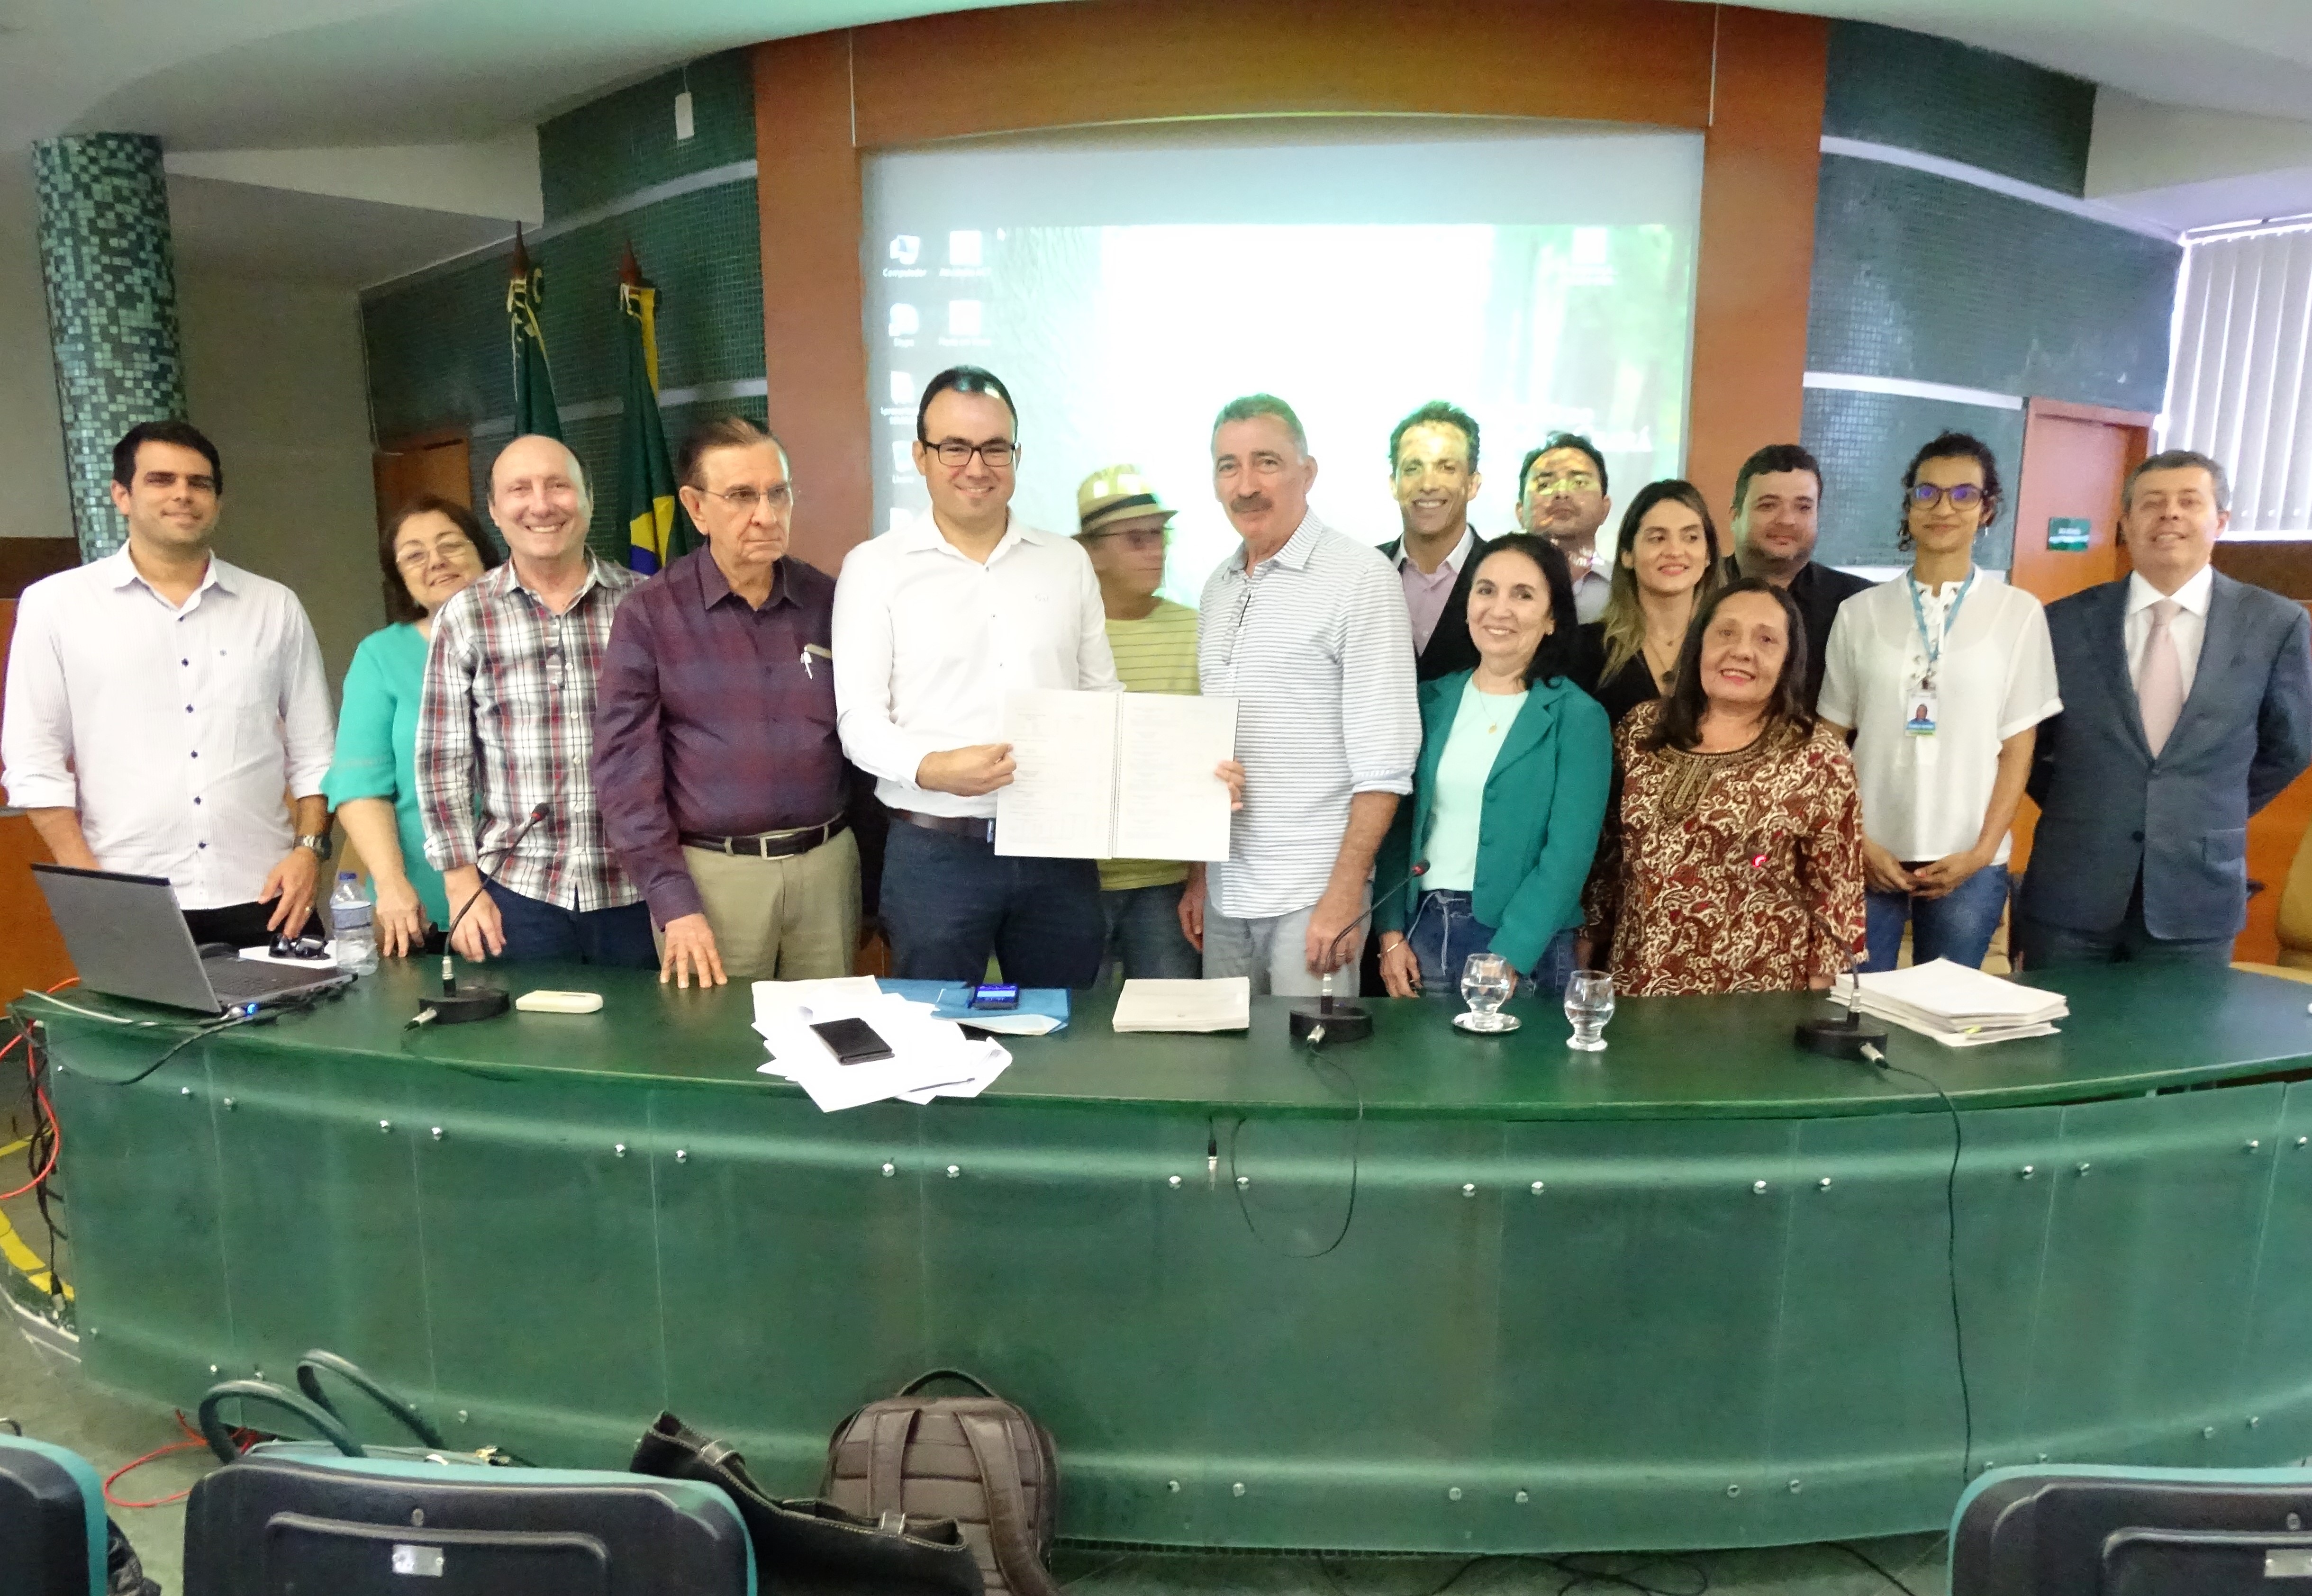 Superintendente da Semace, Carlos Alberto Mendes, mostra a proposta de reformulação do licenciamento ambiental, ao lado de outros integrantes do Coema